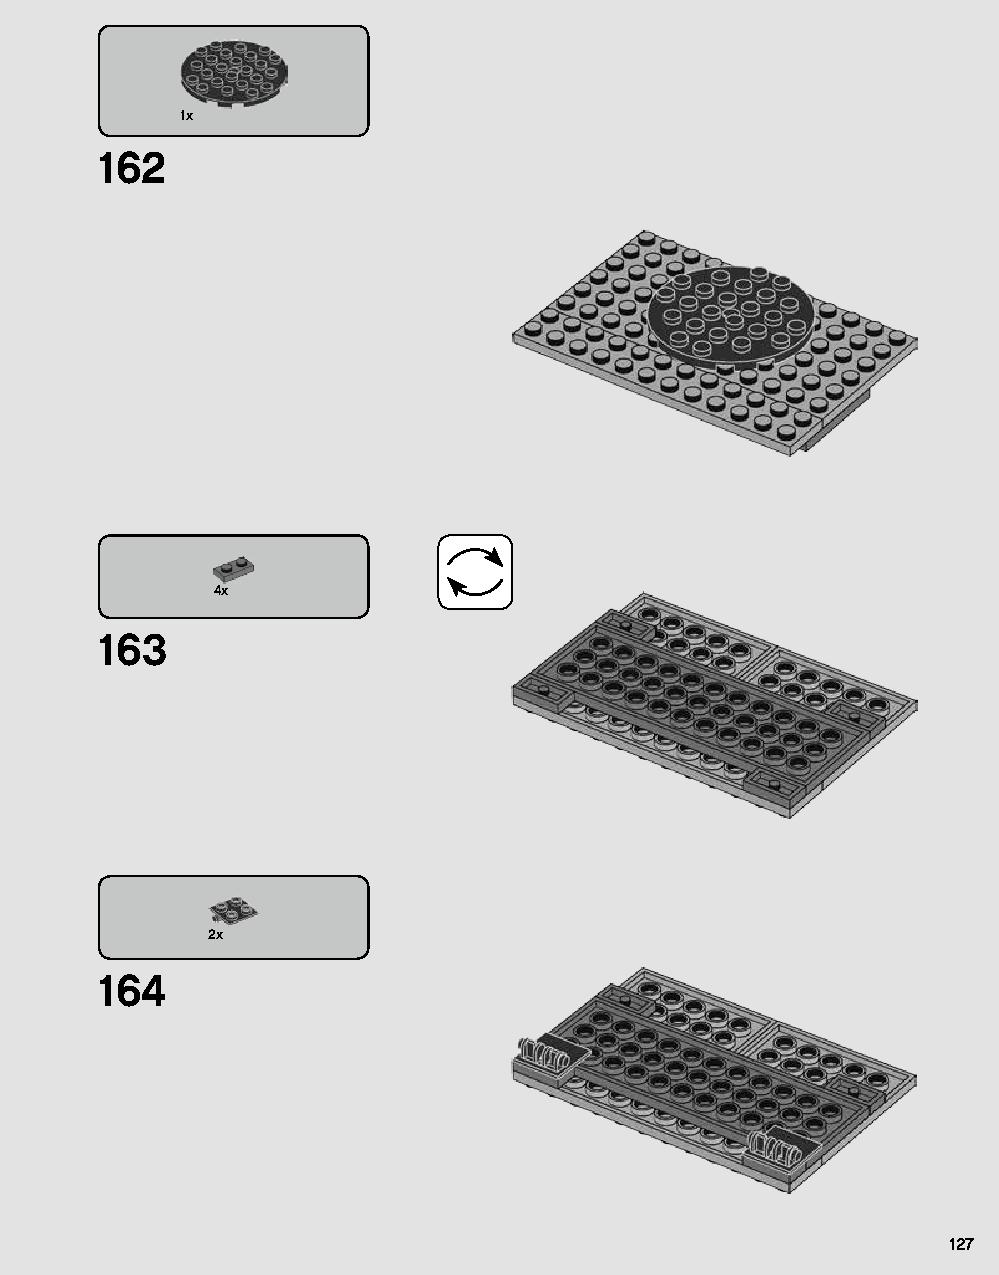 ダース・ベイダーの城 75251 レゴの商品情報 レゴの説明書・組立方法 127 page